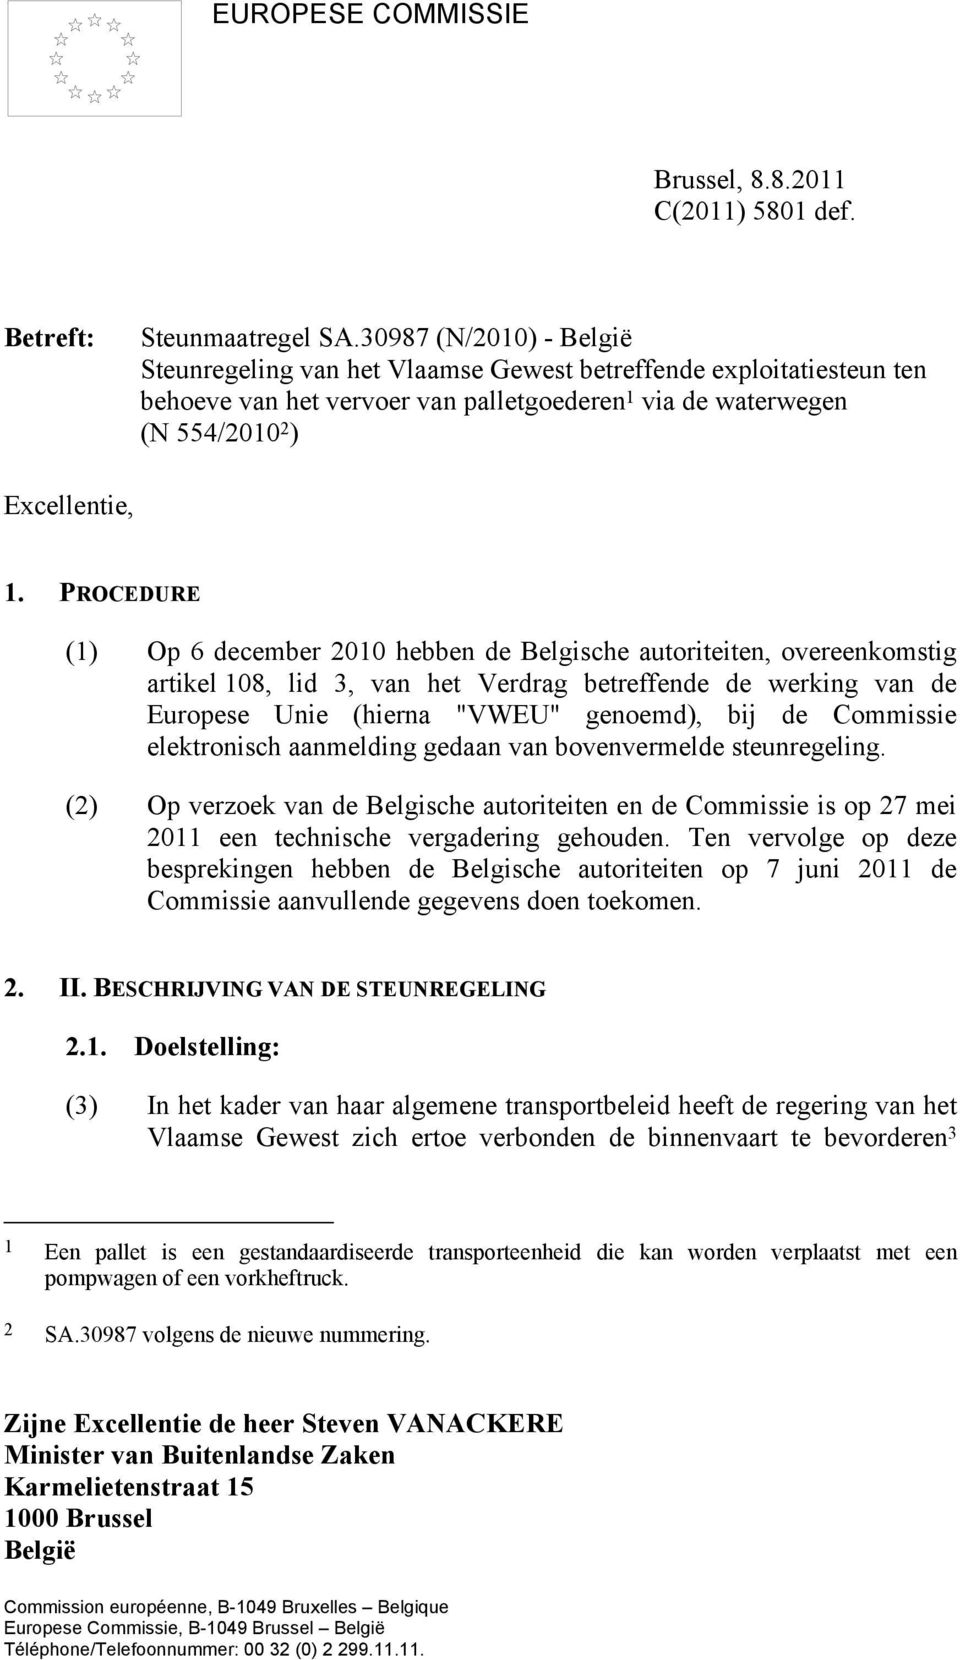 PROCEDURE (1) Op 6 december 2010 hebben de Belgische autoriteiten, overeenkomstig artikel 108, lid 3, van het Verdrag betreffende de werking van de Europese Unie (hierna "VWEU" genoemd), bij de